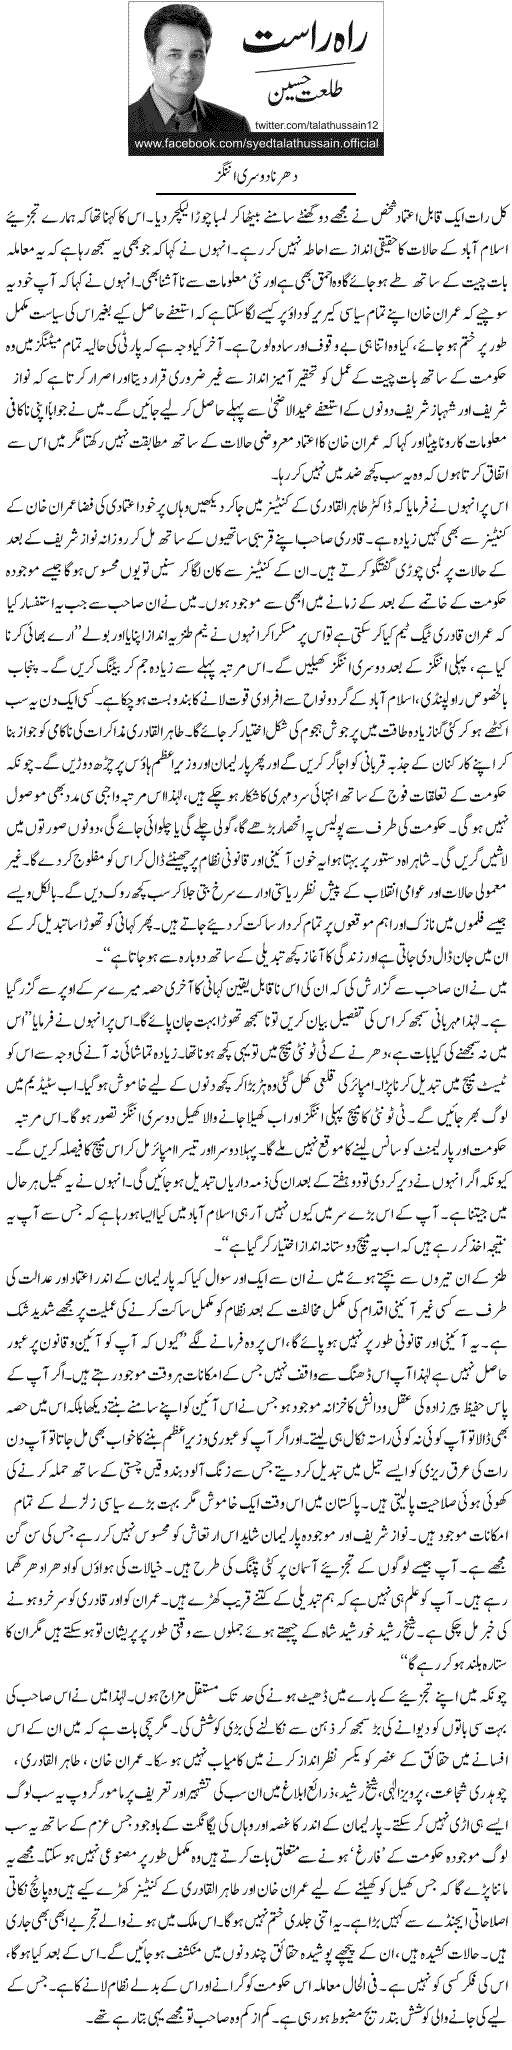 Minhaj-ul-Quran  Print Media Coverage Daily Express - Talat Hussain